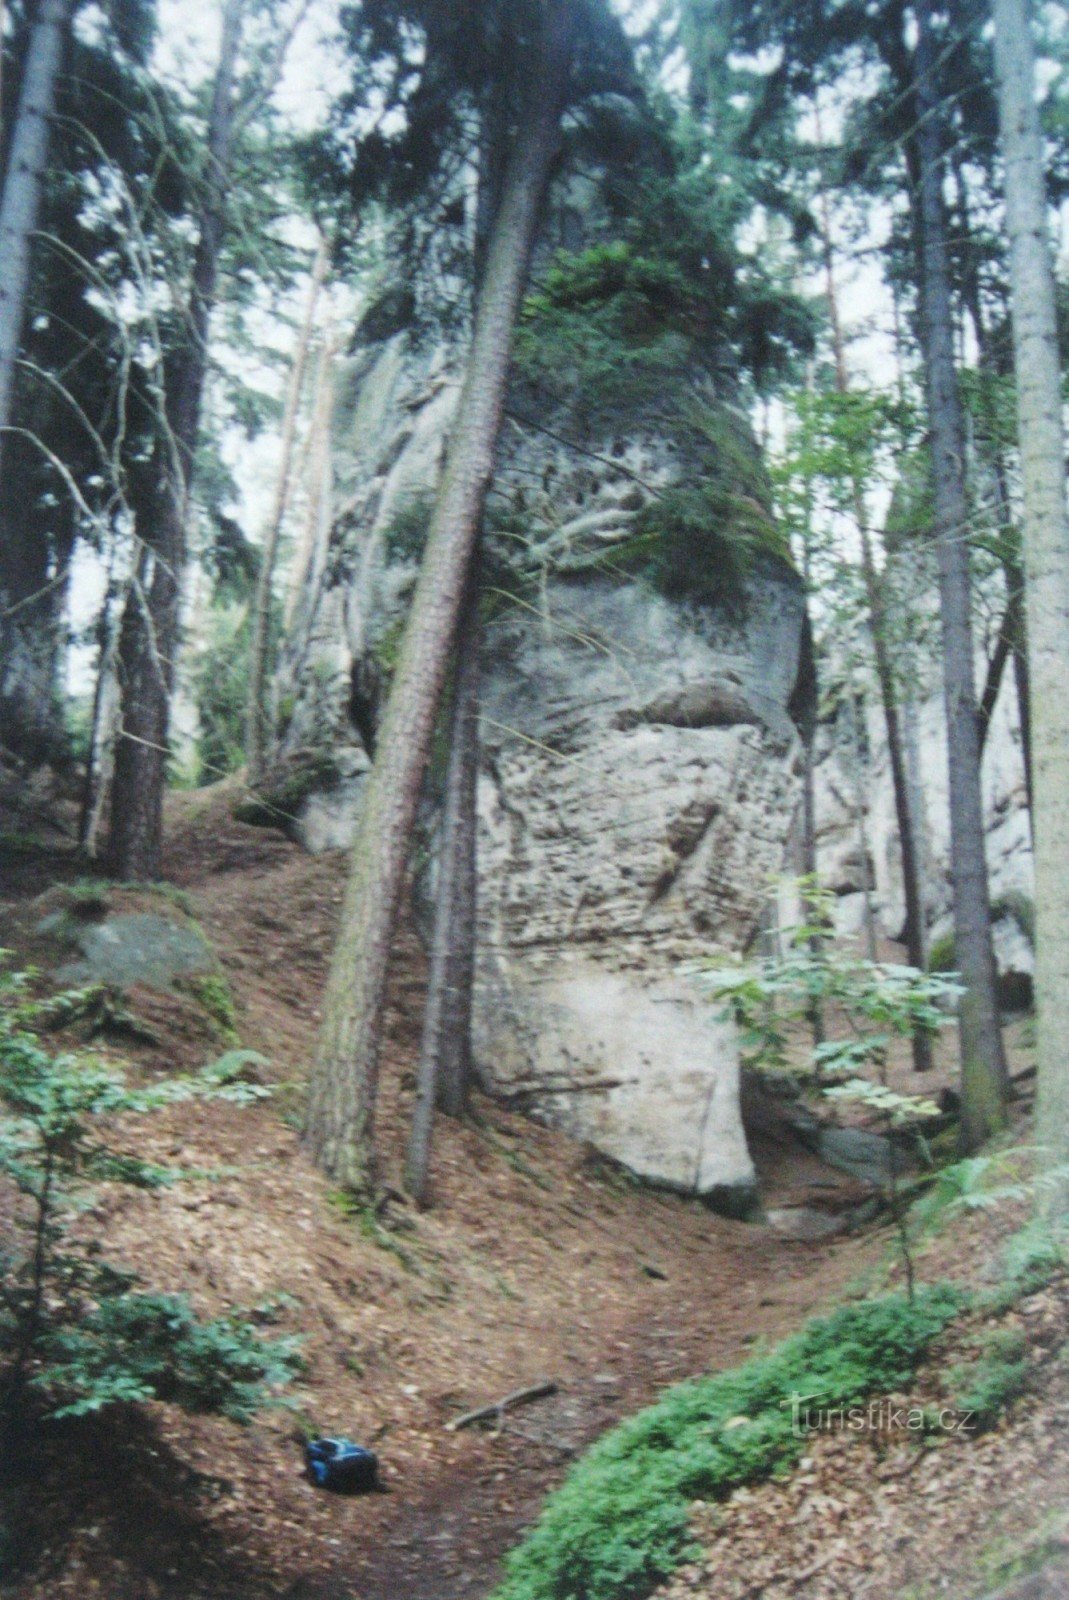 Iz skalnega mesta Hruboskalsky